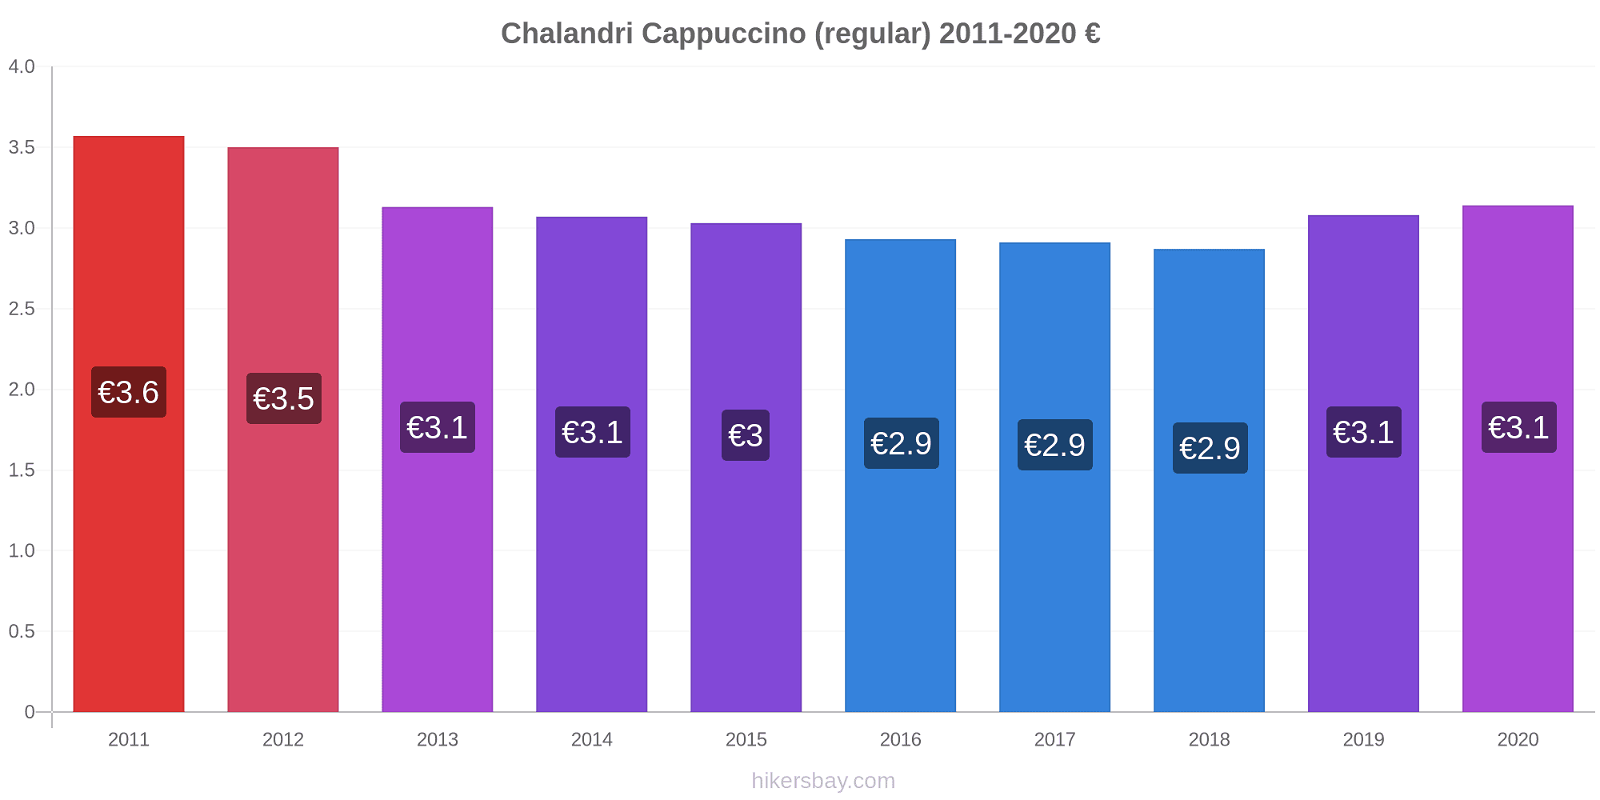 Chalandri price changes Cappuccino (regular) hikersbay.com